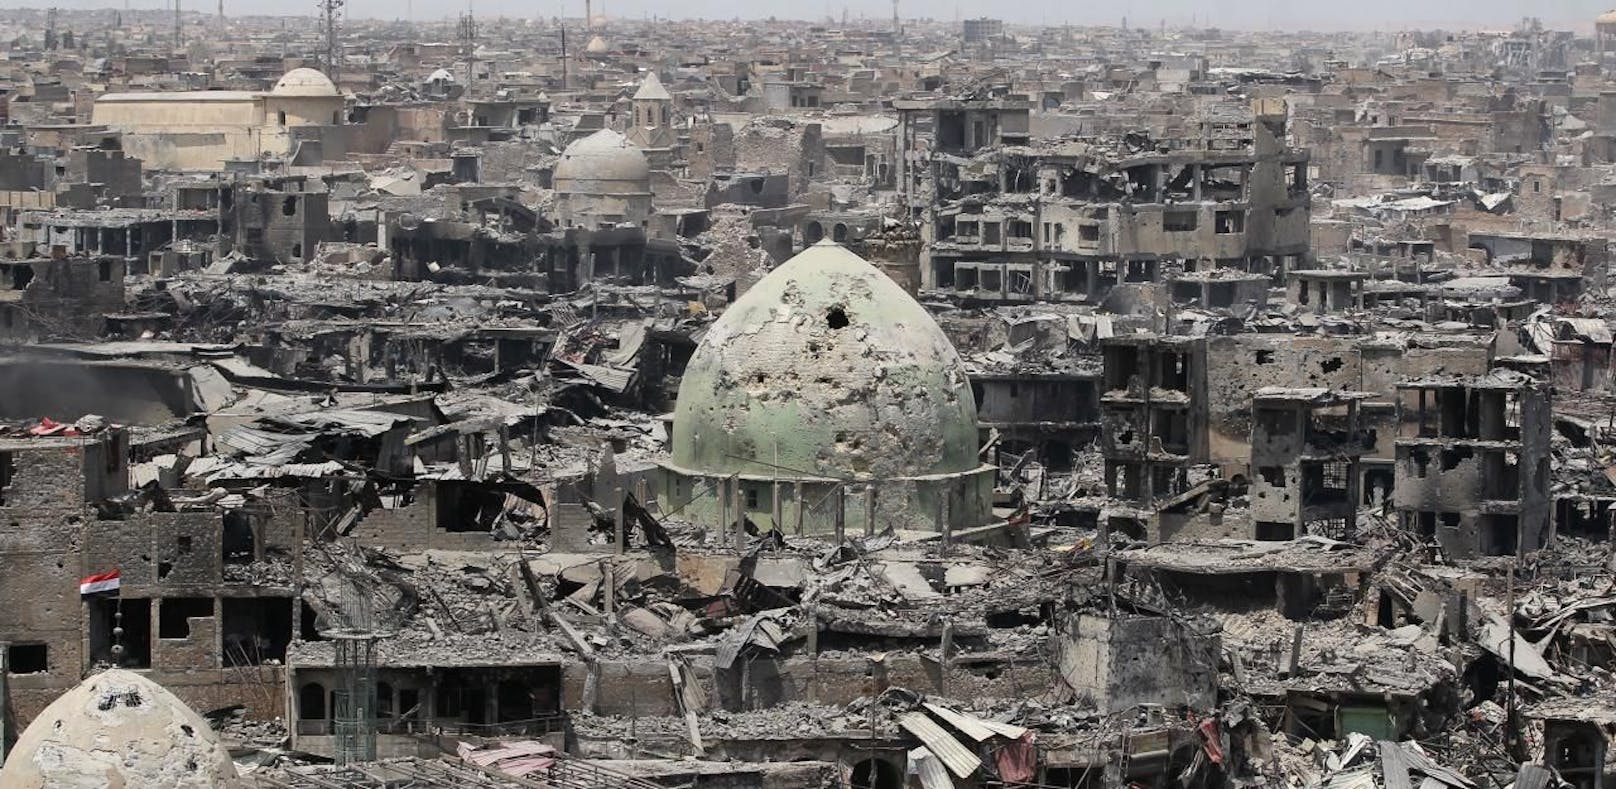 Die Stadt Mosul wurde während des Kampfes gegen den IS völlig zerstört